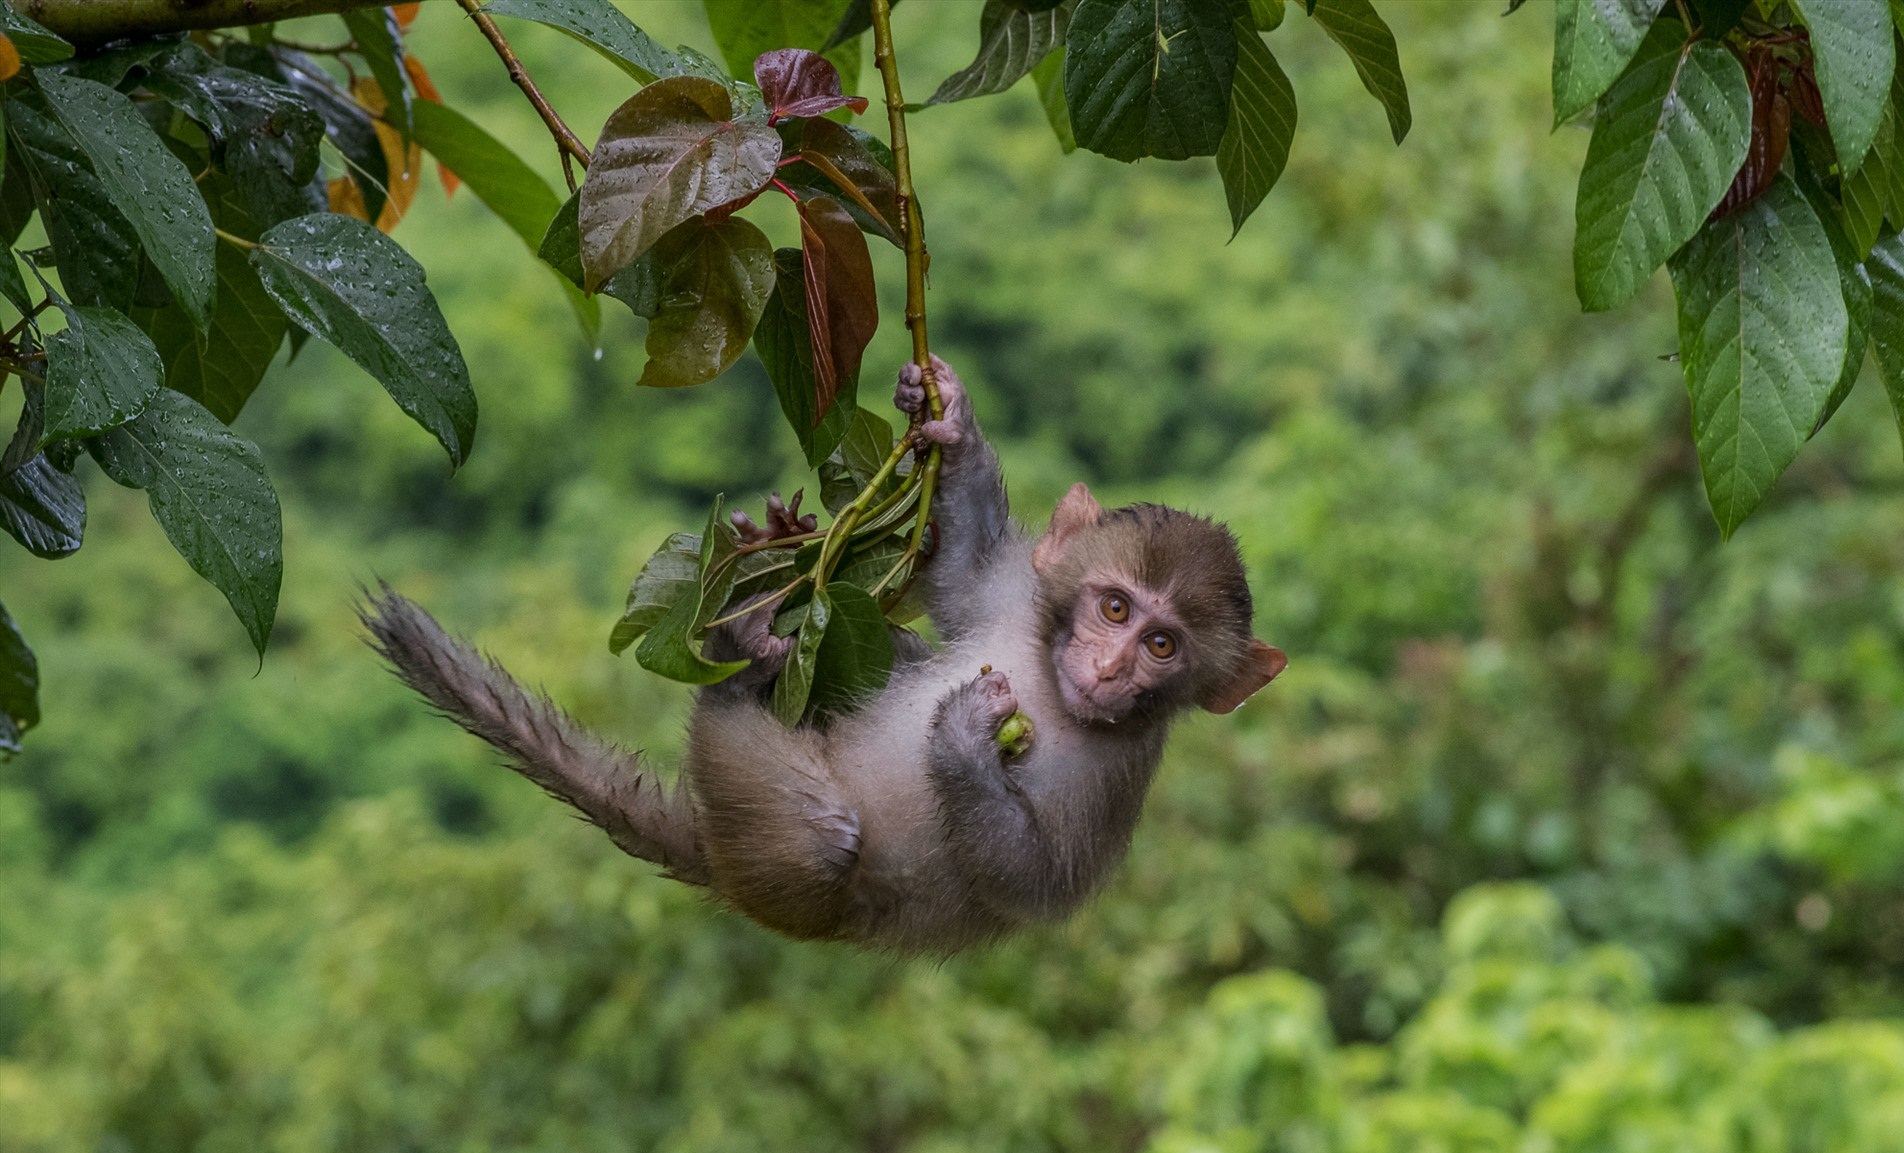 Bạn muốn khám phá sự sống của con khỉ trong vườn thú? Dường như chỉ cần nhìn hình ảnh ấy, bạn sẽ có cảm giác được đưa vào một thế giới hoang dã đầy màu sắc.